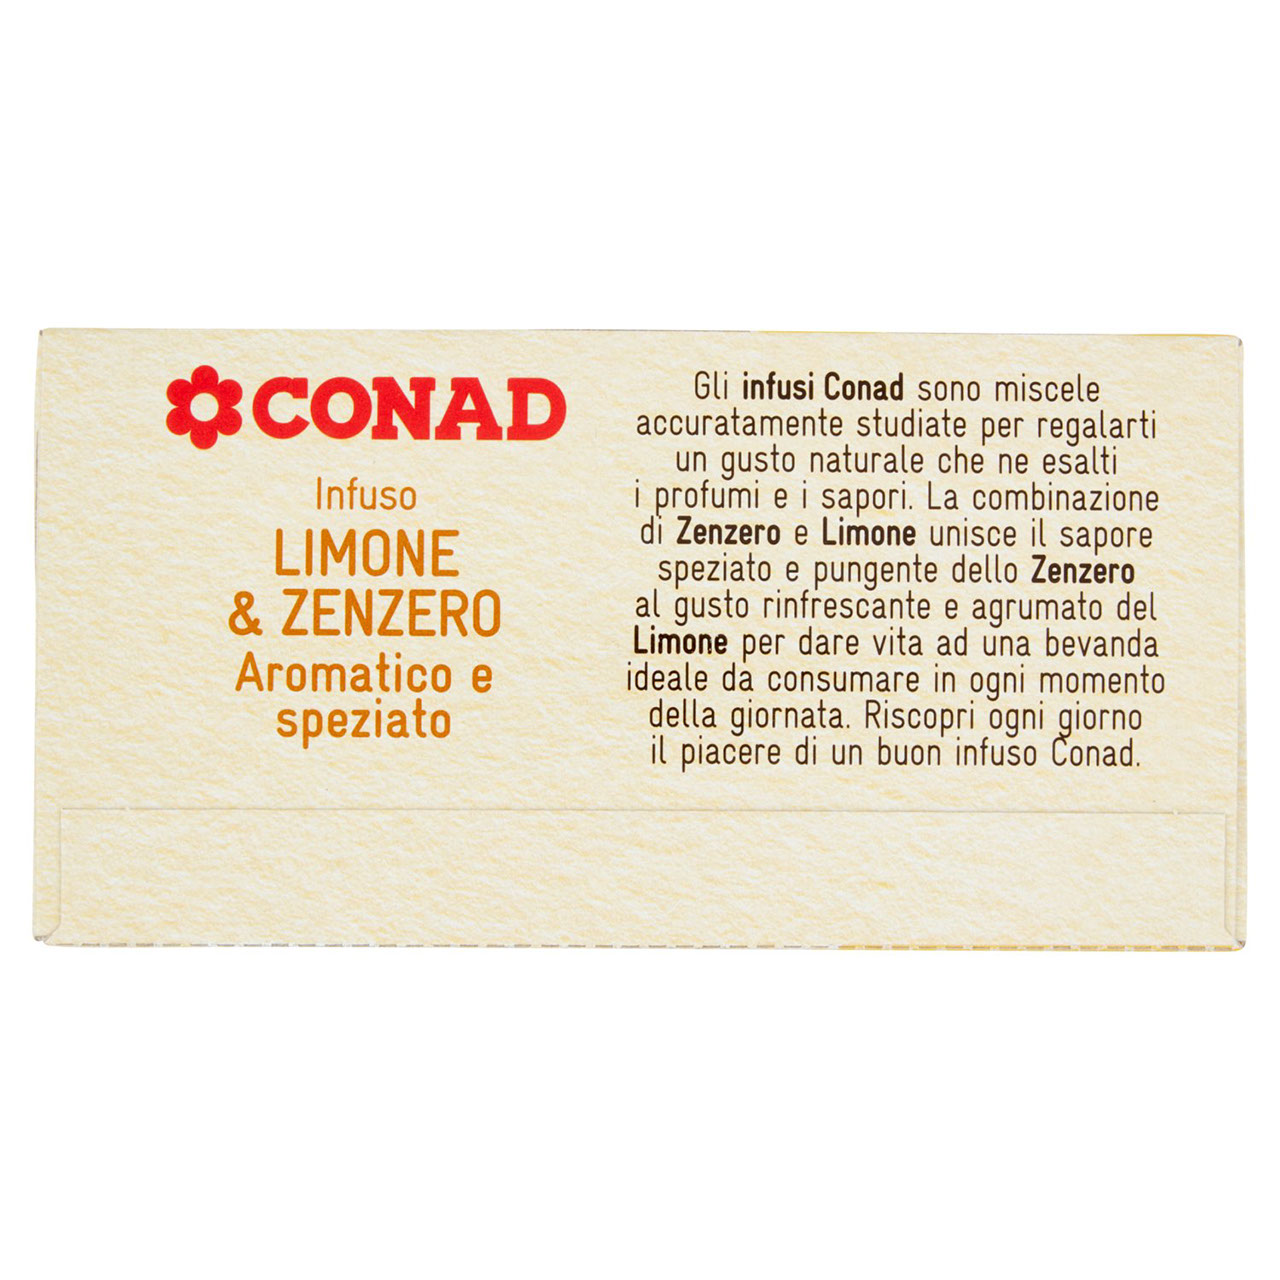 Infuso Limone & Zenzero 20 filtri da 2,5 g Conad